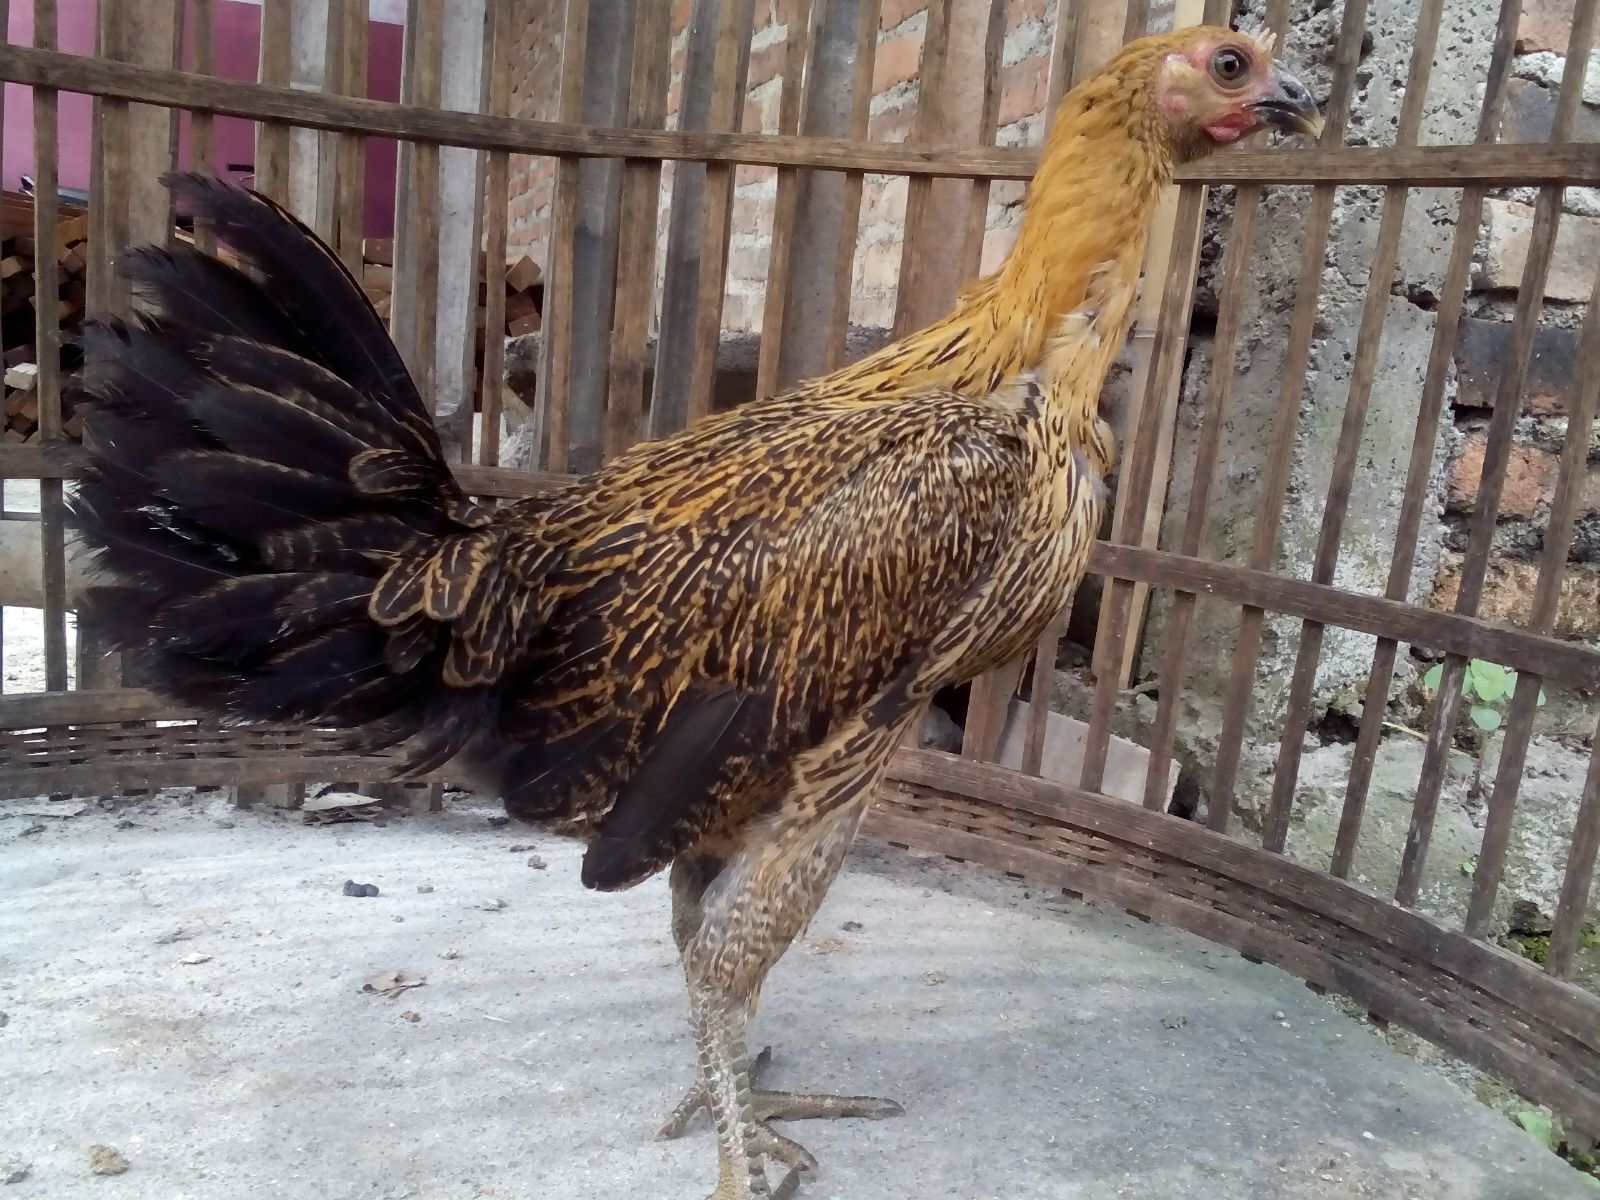 img 20151222 wa0004 Jual Ayam Hias HP : 08564 77 23 888 | BERKUALITAS DAN TERPERCAYA Ayam Pelung Betina Persiapan Kirim ke Pekanbaru